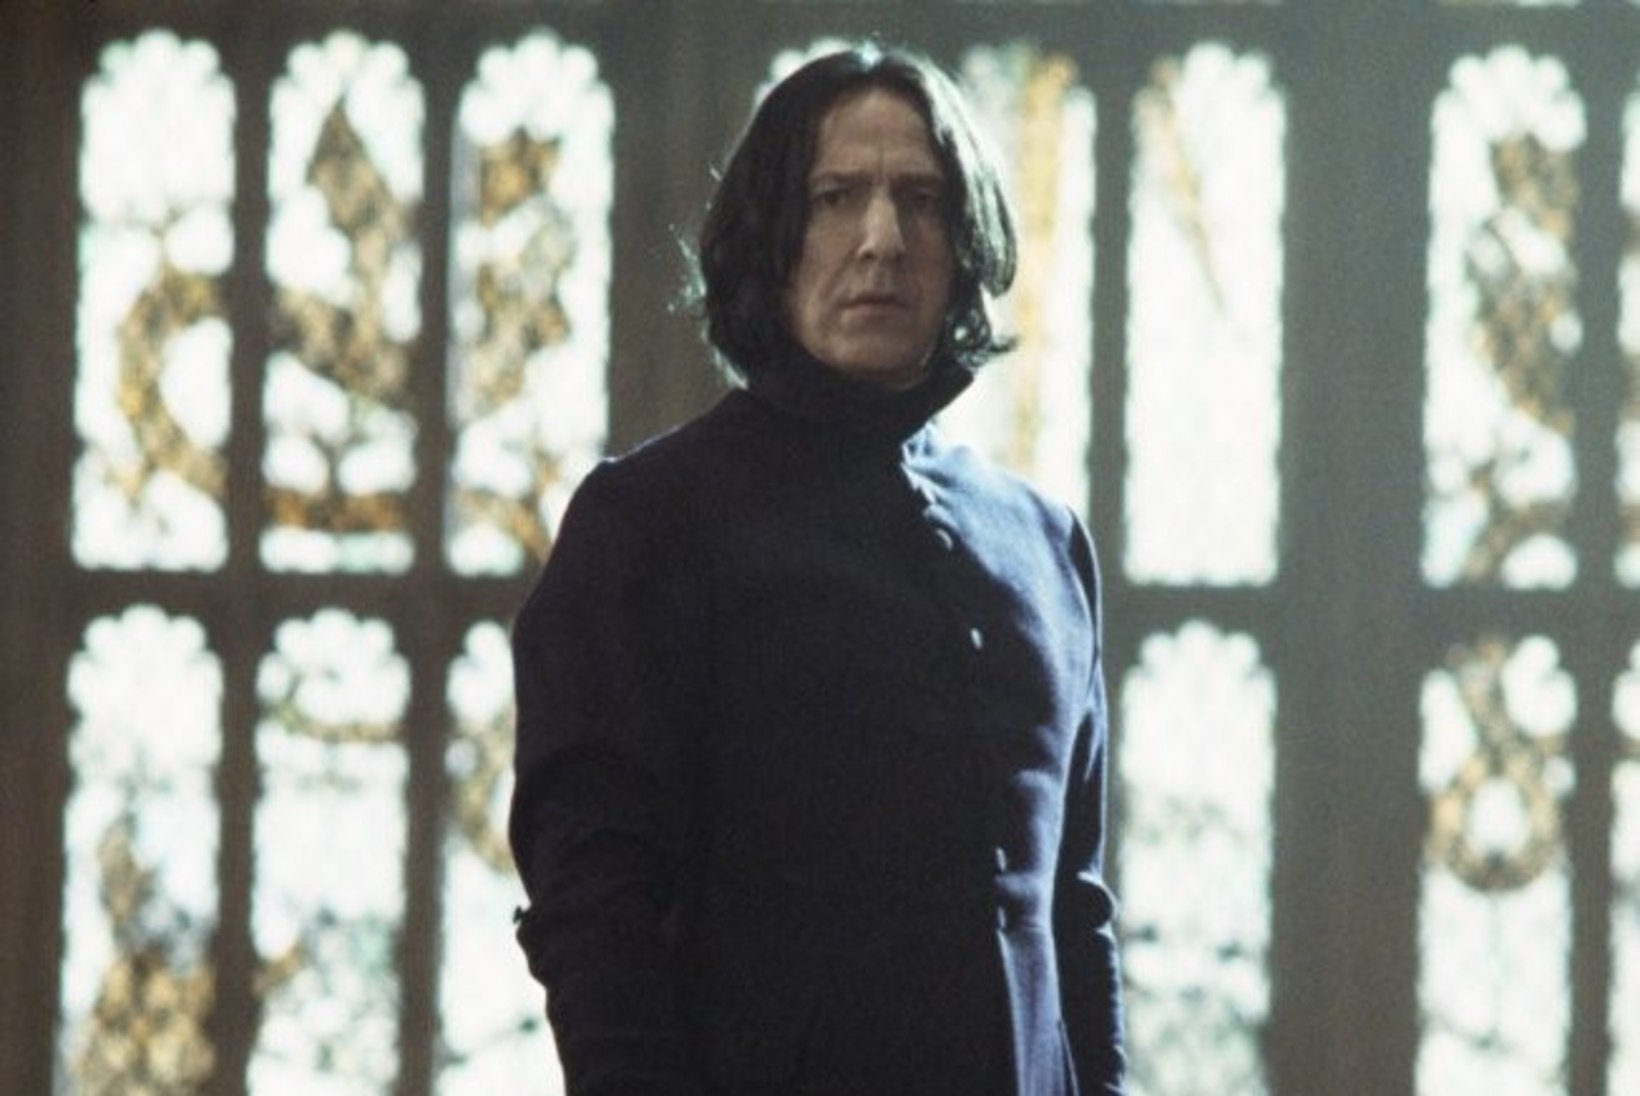 Salapaberid: kadunud Alan Rickman polnud Snape'i rolliga üldse rahul